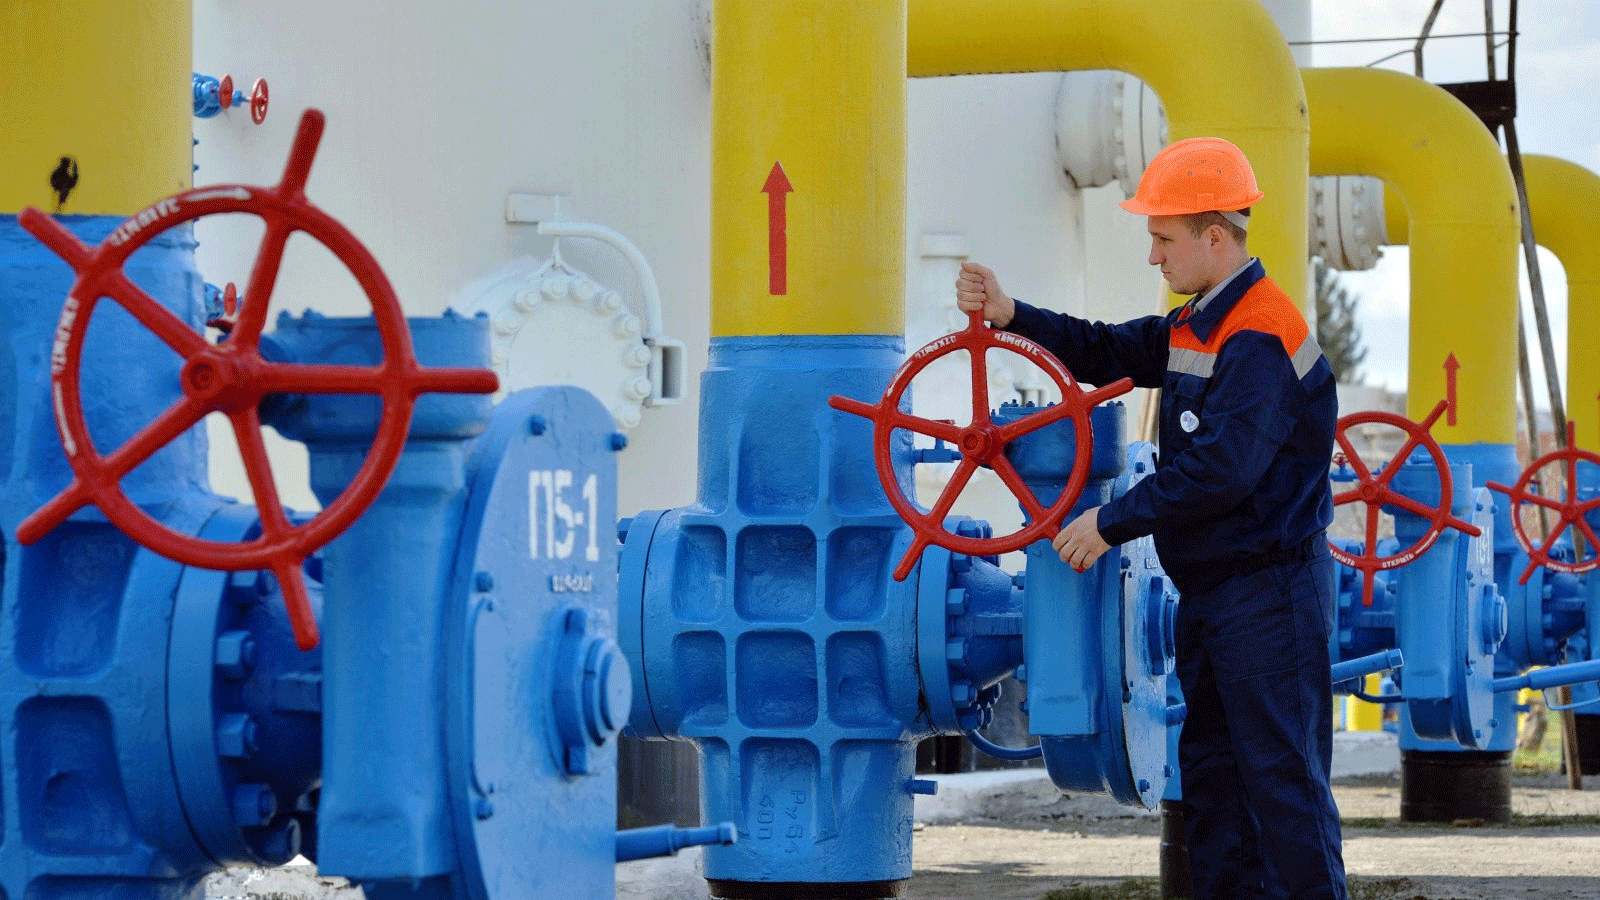 موظف يدير صمام منشأة غاز خلال تمرين تدريبي للتعامل مع حالات الطوارئ في محطة ضخ الغاز على خط أنابيب الغاز في بلدة بوياركا الصغيرة في منطقة كييف، أوكرانيا، 22 نيسان\أبريل، 2015 